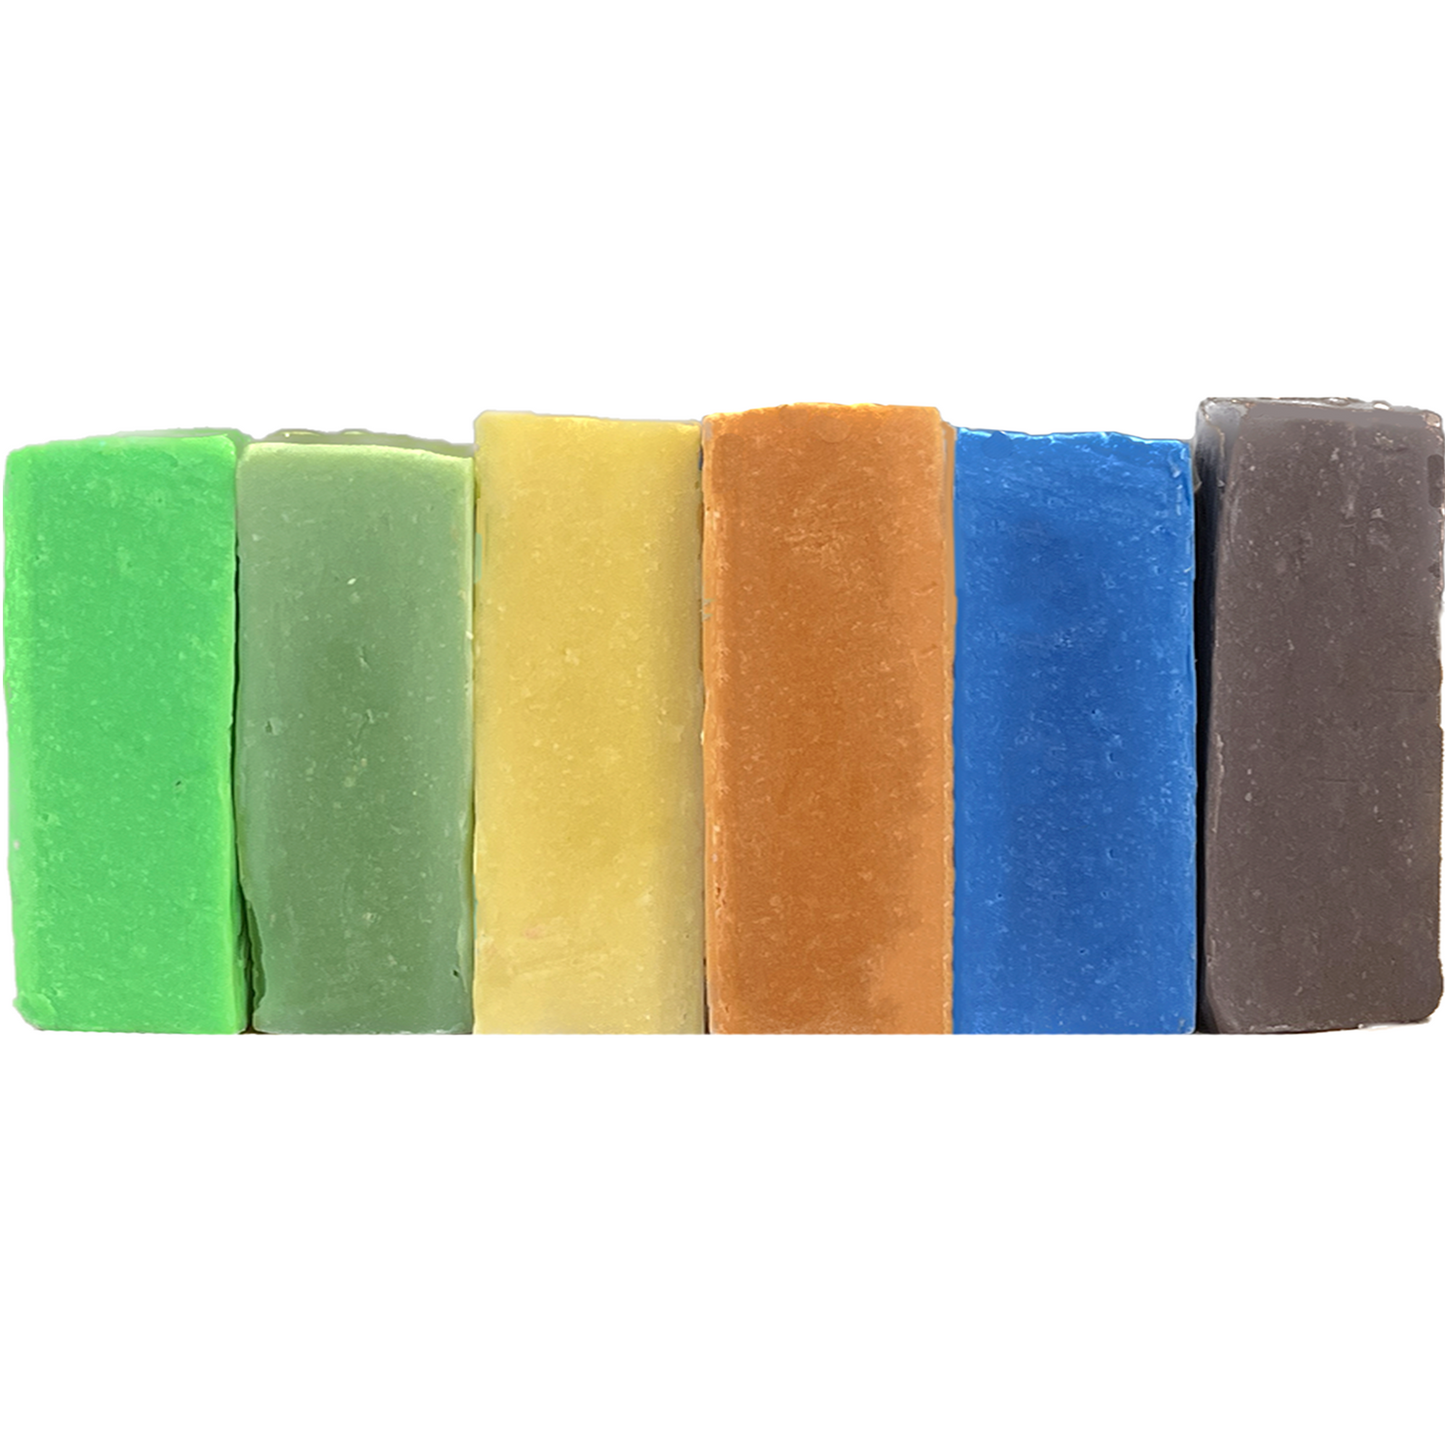 Soap Dough Co. - Jungle Kit - neon green, kermit green, yellow, orange, neon blue, brown.